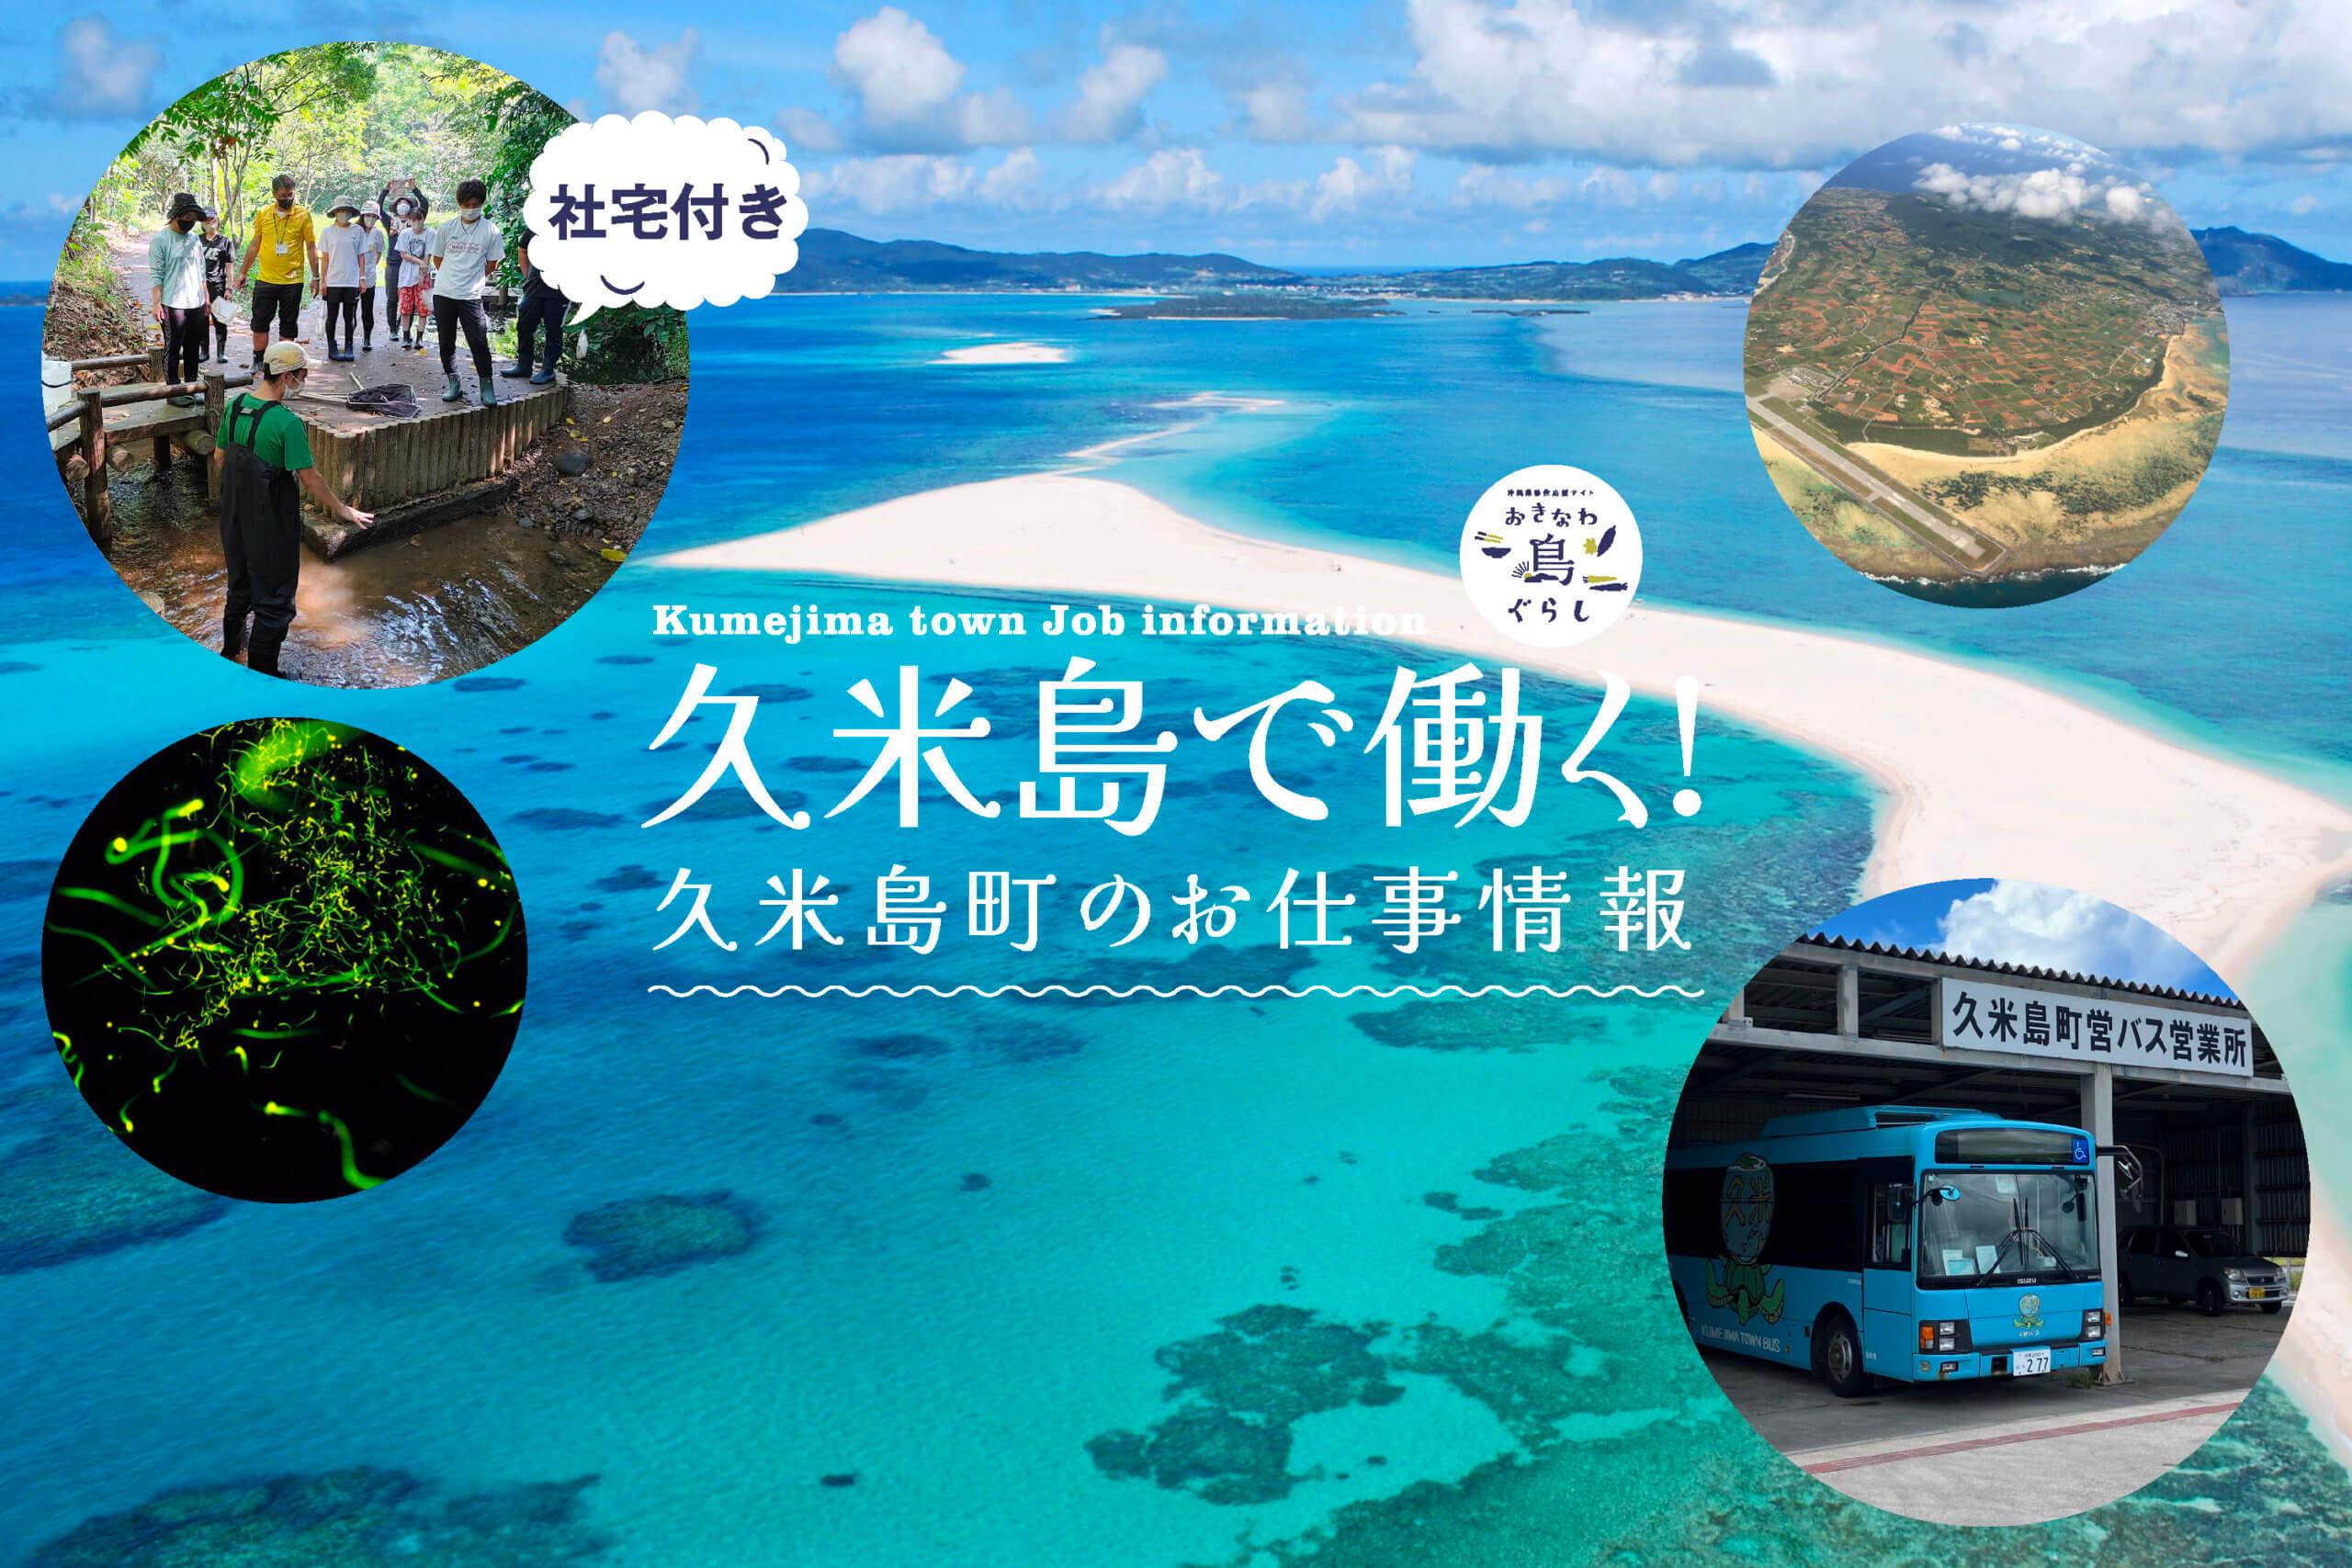 球美の島と言われる美しい久米島町の移住定住担当より最新のお仕事情報をご紹介。